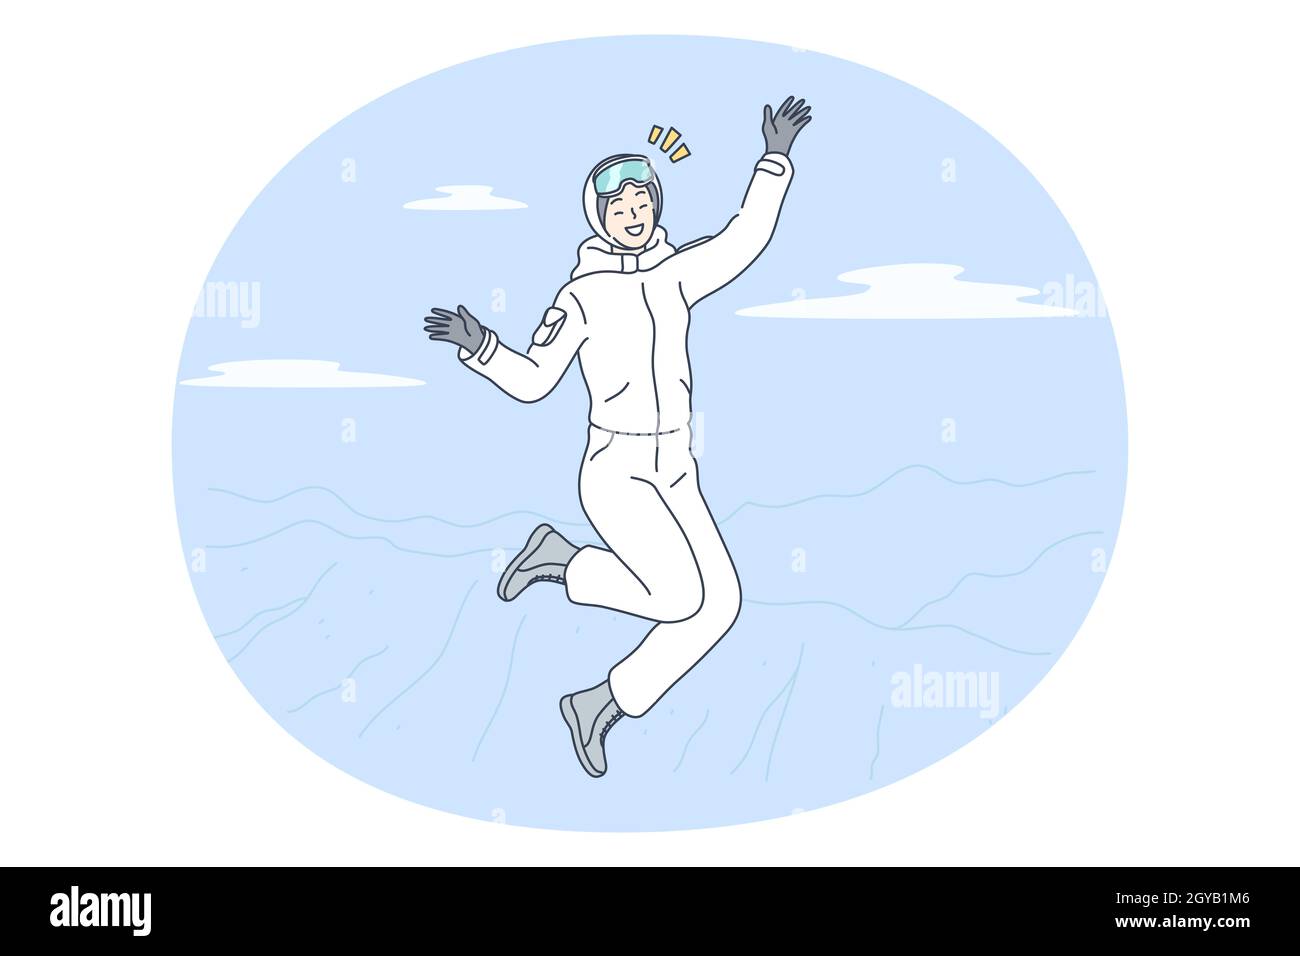 Winteraktivitäten, Skifahren, Snowboardkonzept. Junge glücklich lächelnde Frau Zeichentrickfigur im weißen Winterkostüm springen Gefühl fröhlich nach ri Stockfoto